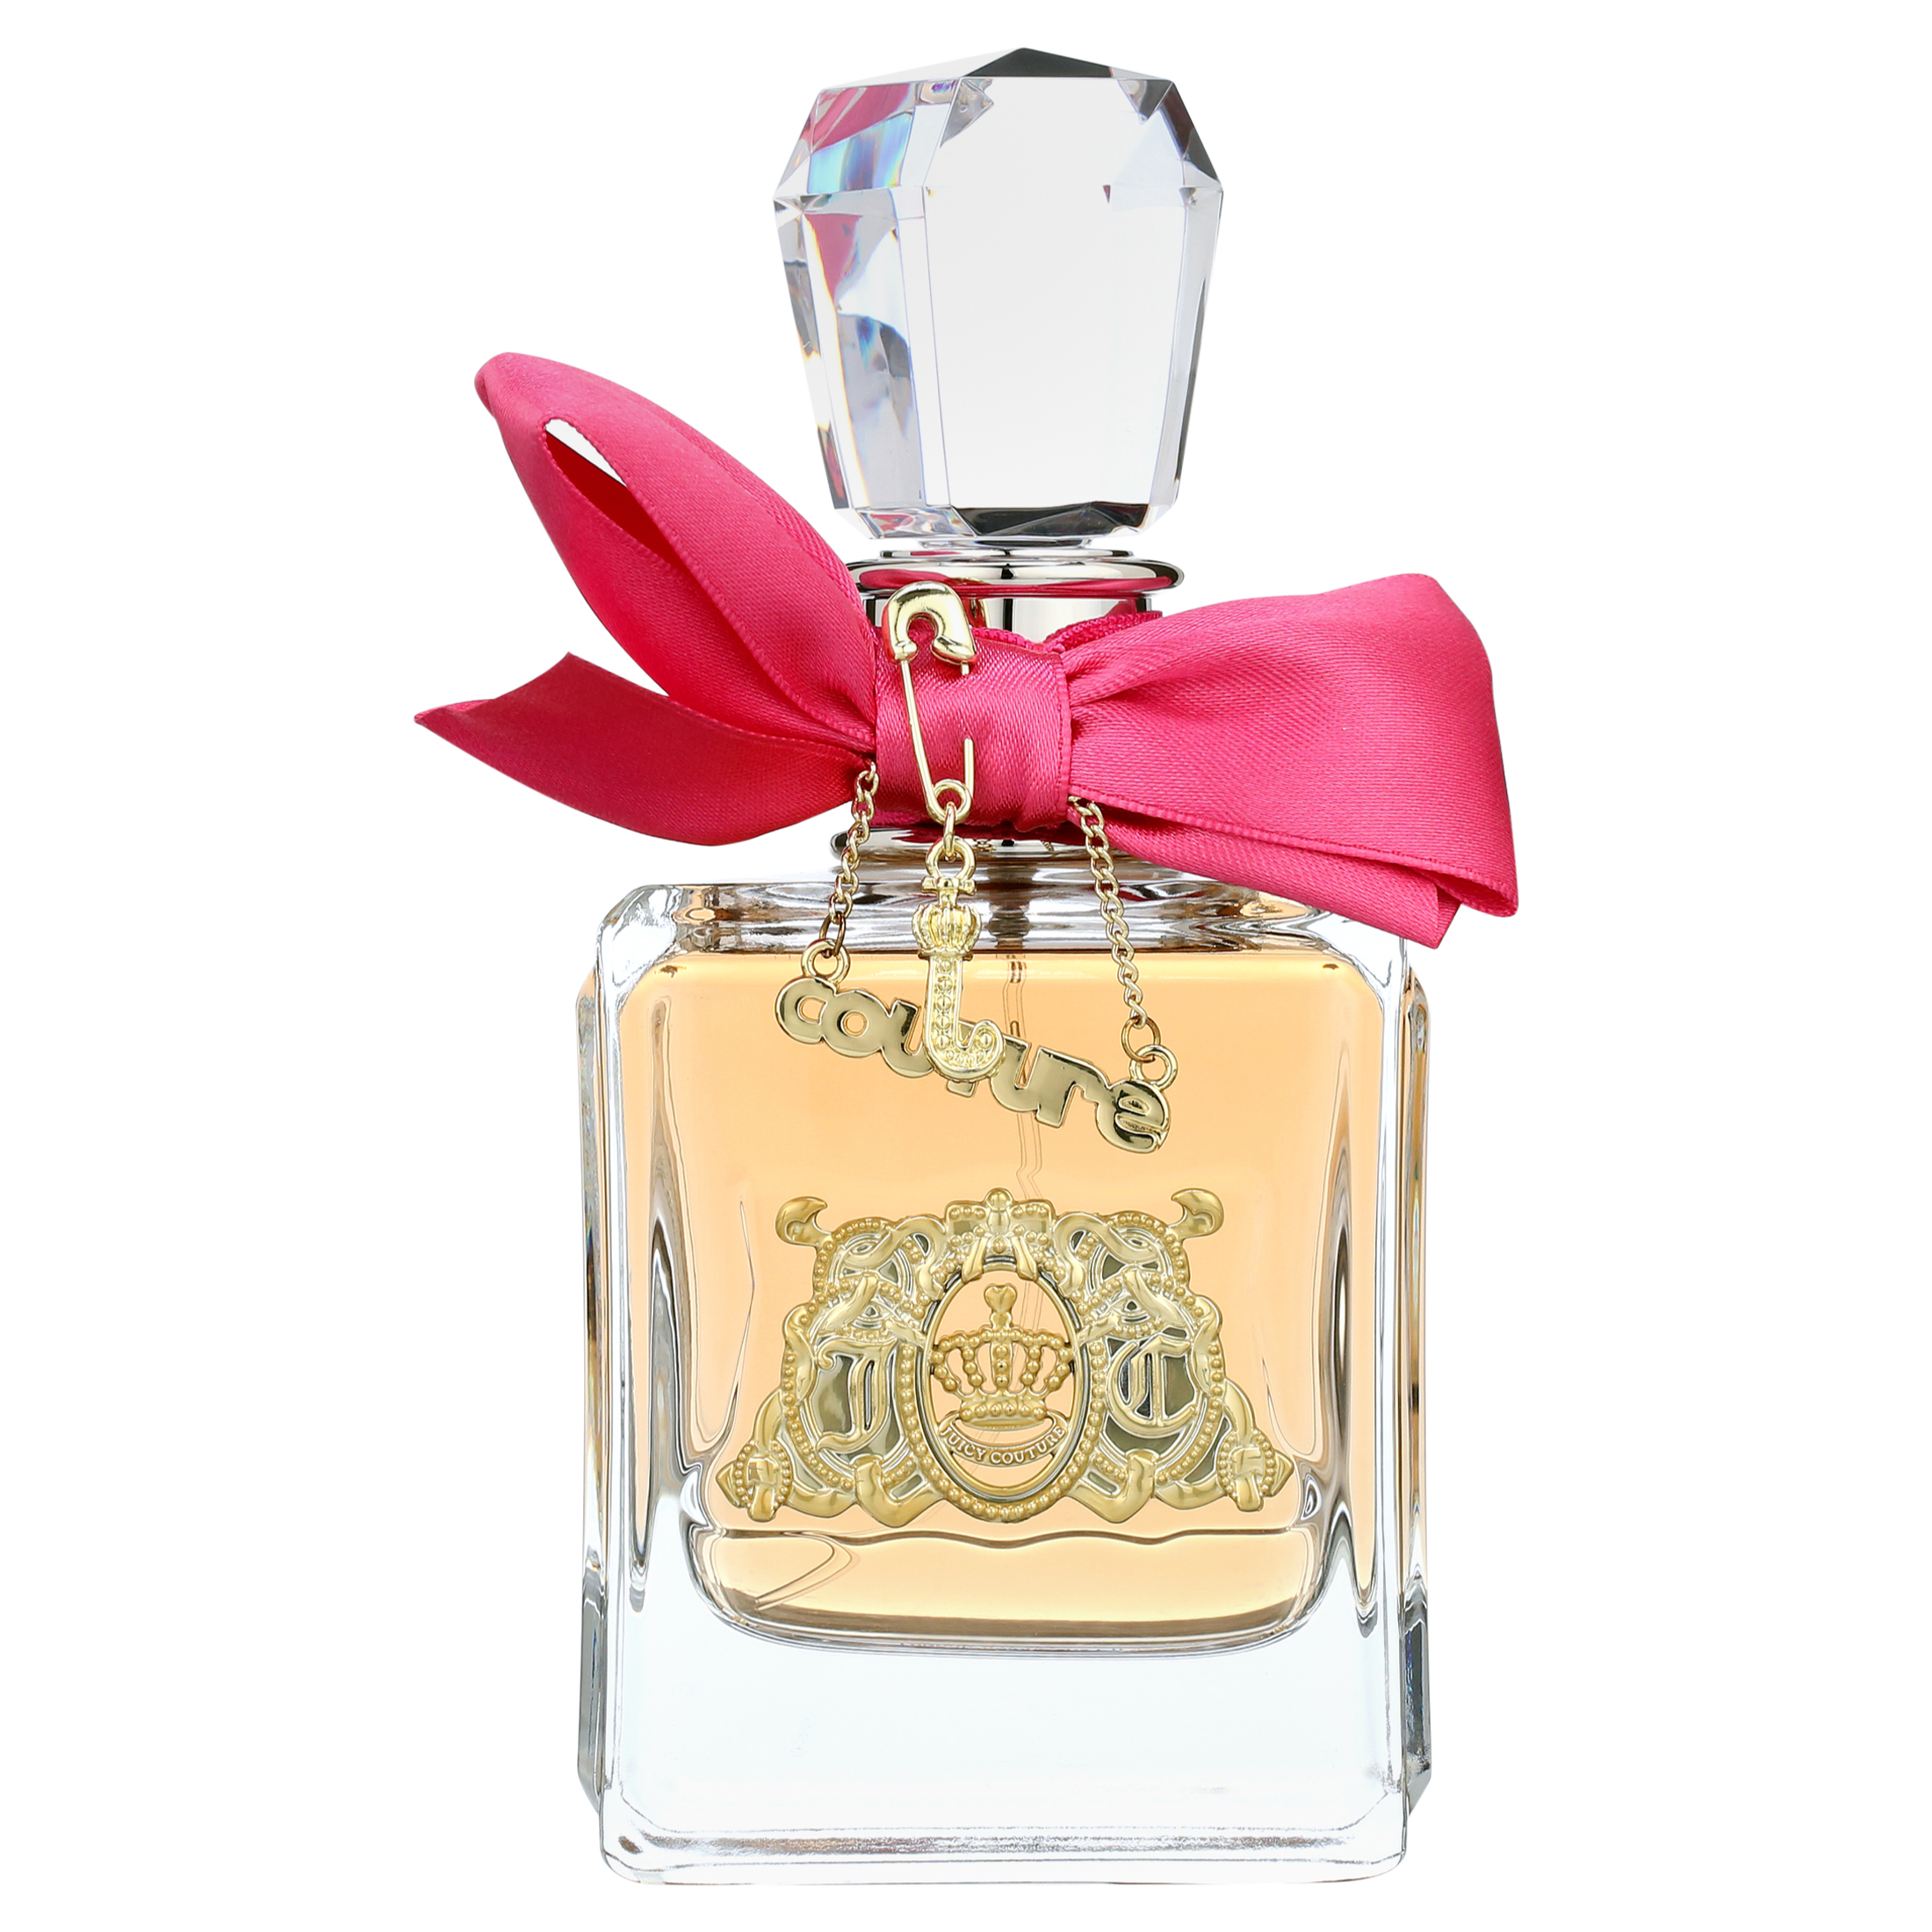 Juicy Couture Viva La Juicy Eau de Parfum Perfume for Women, 3.4 oz - image 3 of 7